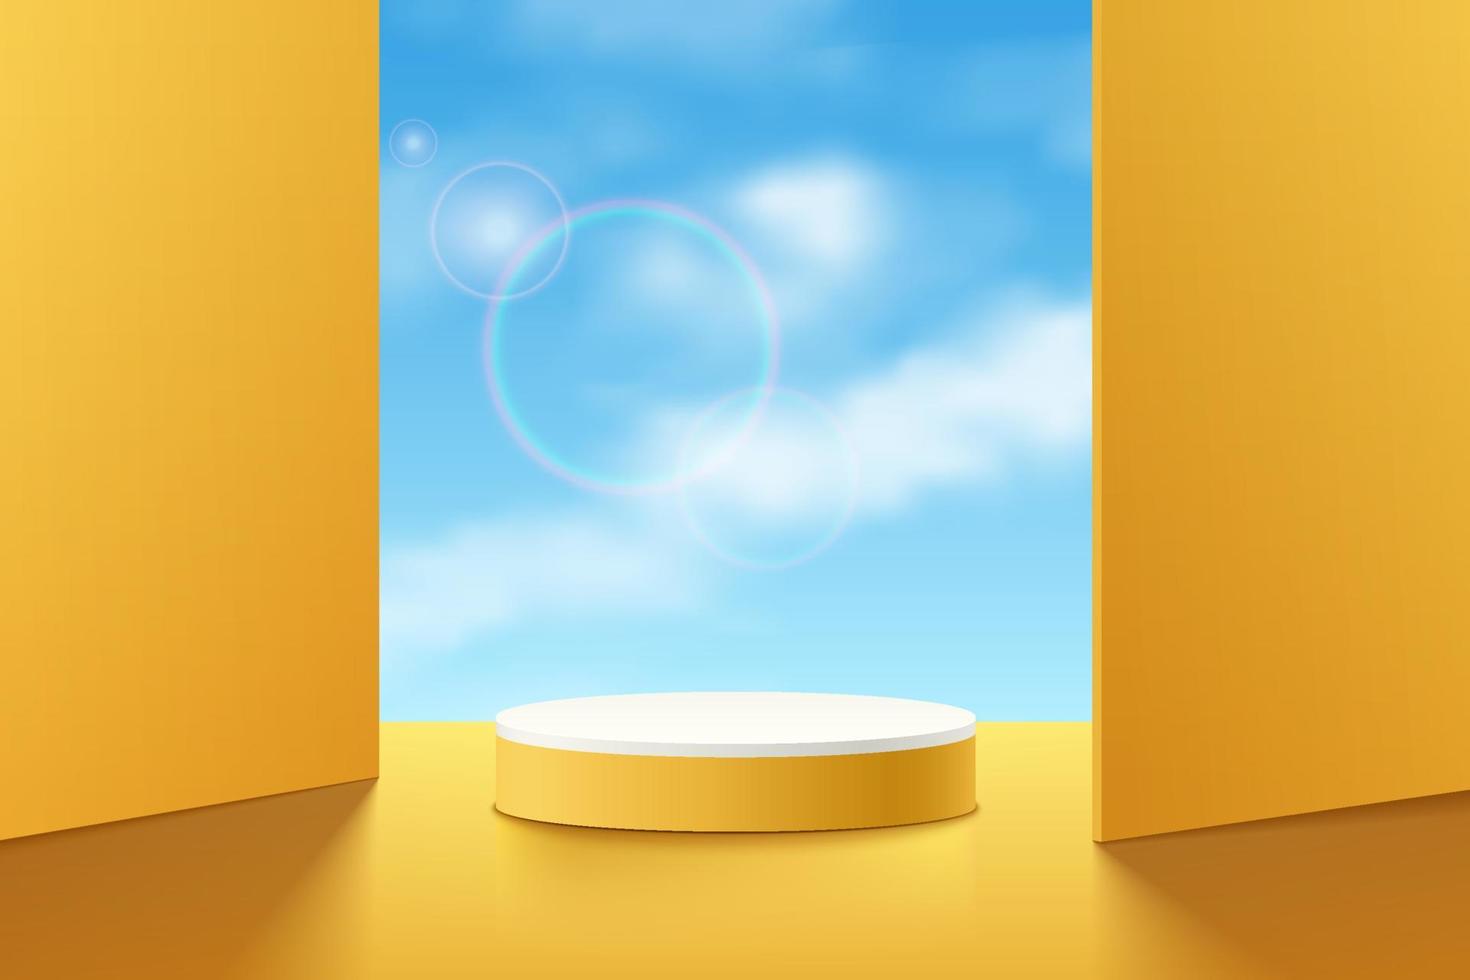 realistische gele 3d cilinder sokkel podium met wolken blauwe lucht in vierkanten achtergrond. minimale scène voor productenshowcase, promotievertoning. vector abstracte studio kamer geometrische platform ontwerp.